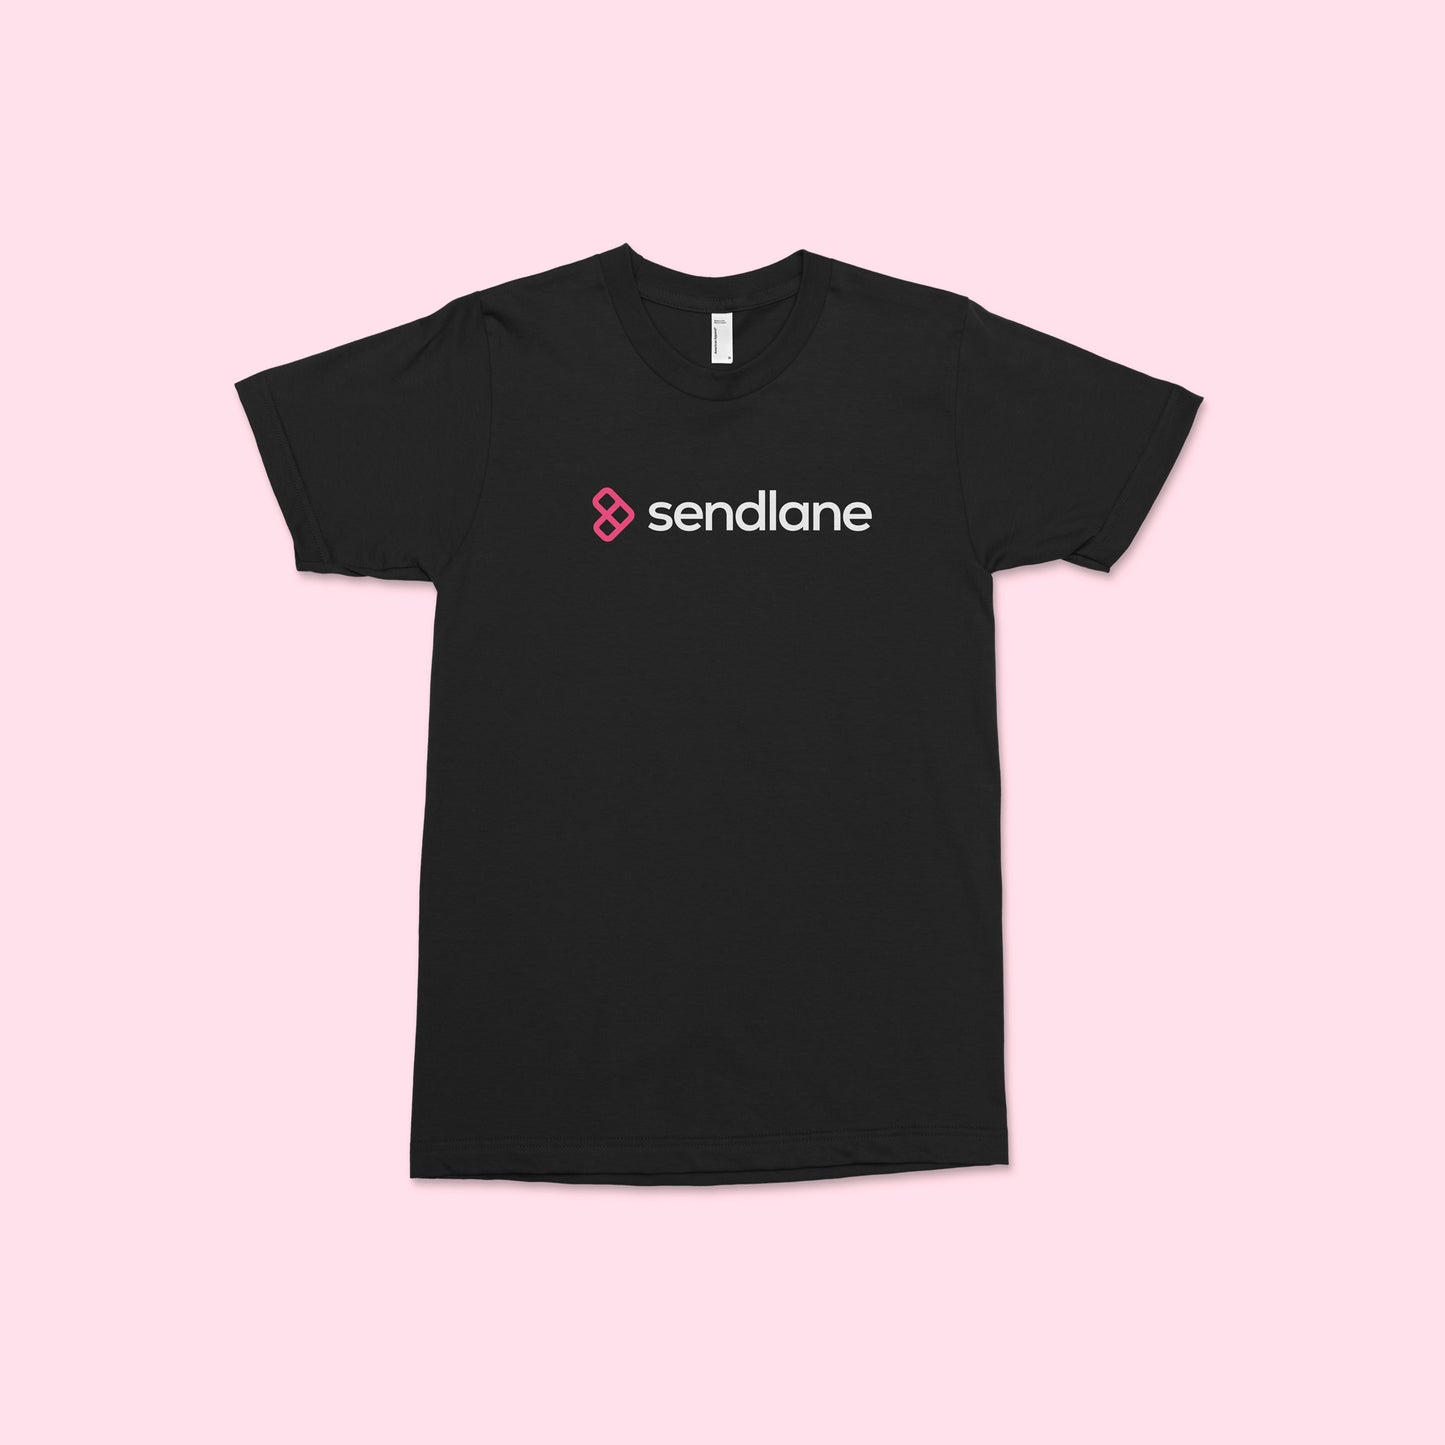 Sendlane Logo T-shirt